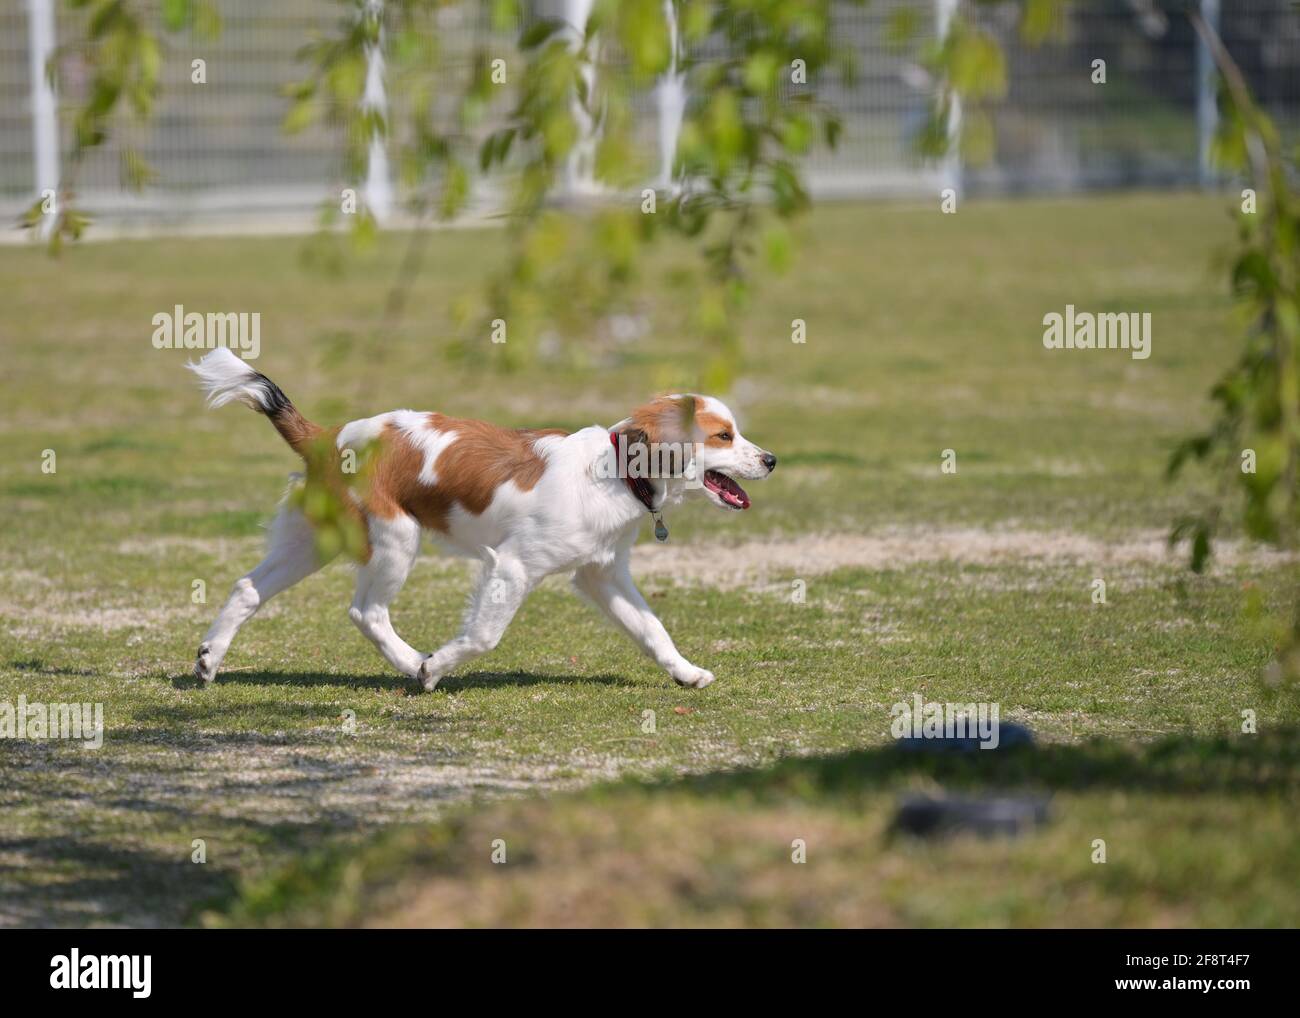 Felice giovane cane kooiker purebred che cammina sull'erba con la sua lingua fuori. Rami di albero e foglie verdi in primo piano. Foto Stock